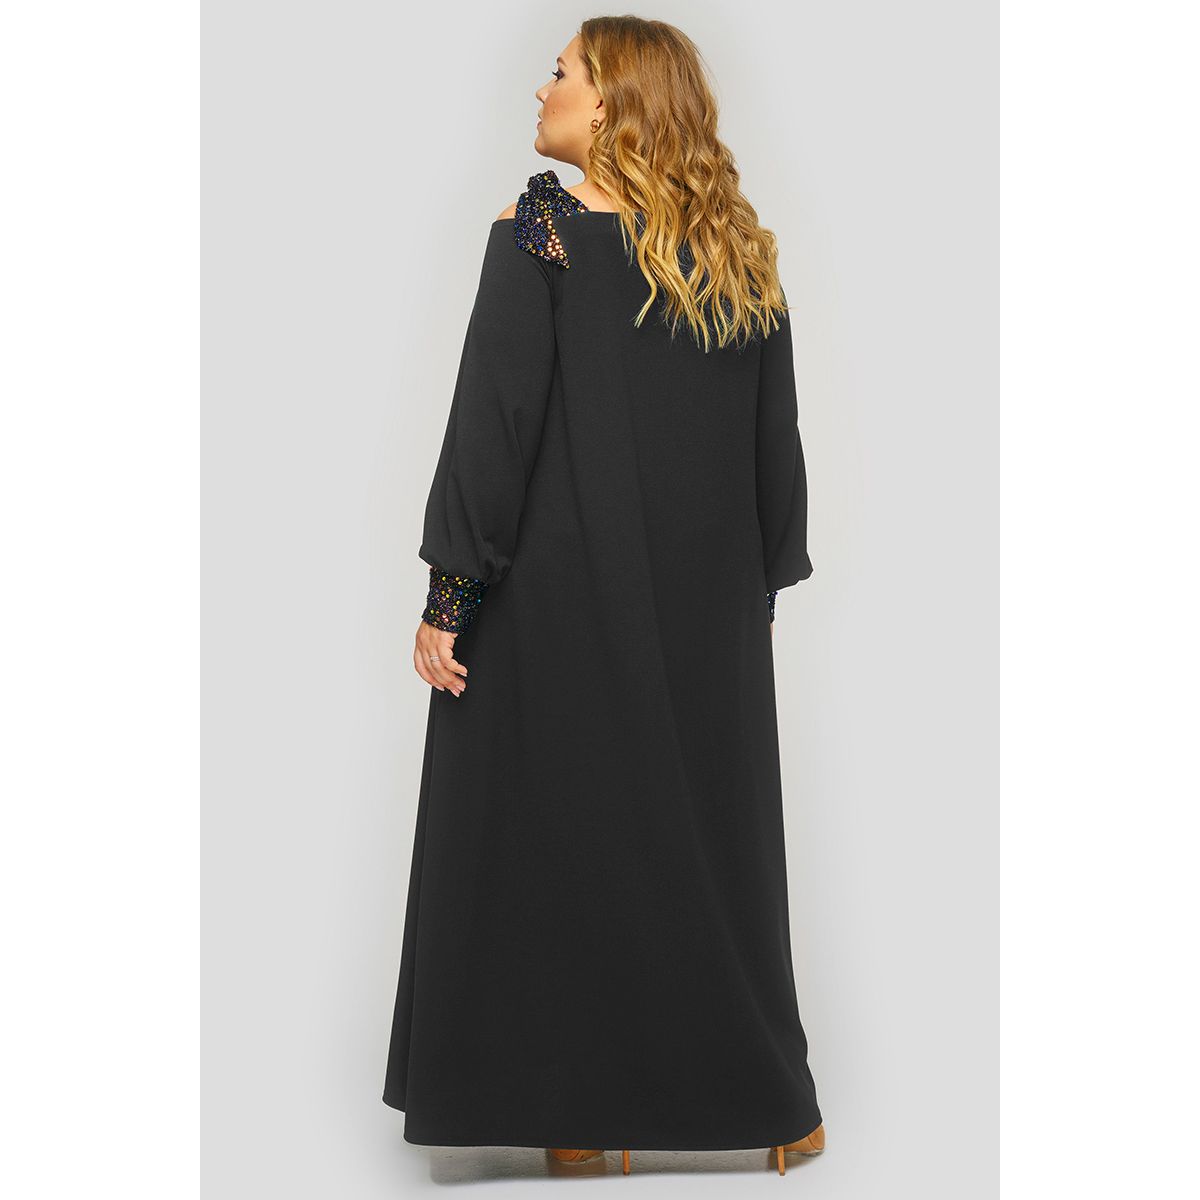 Платье длинное из черного крепа, отделка пайетки.